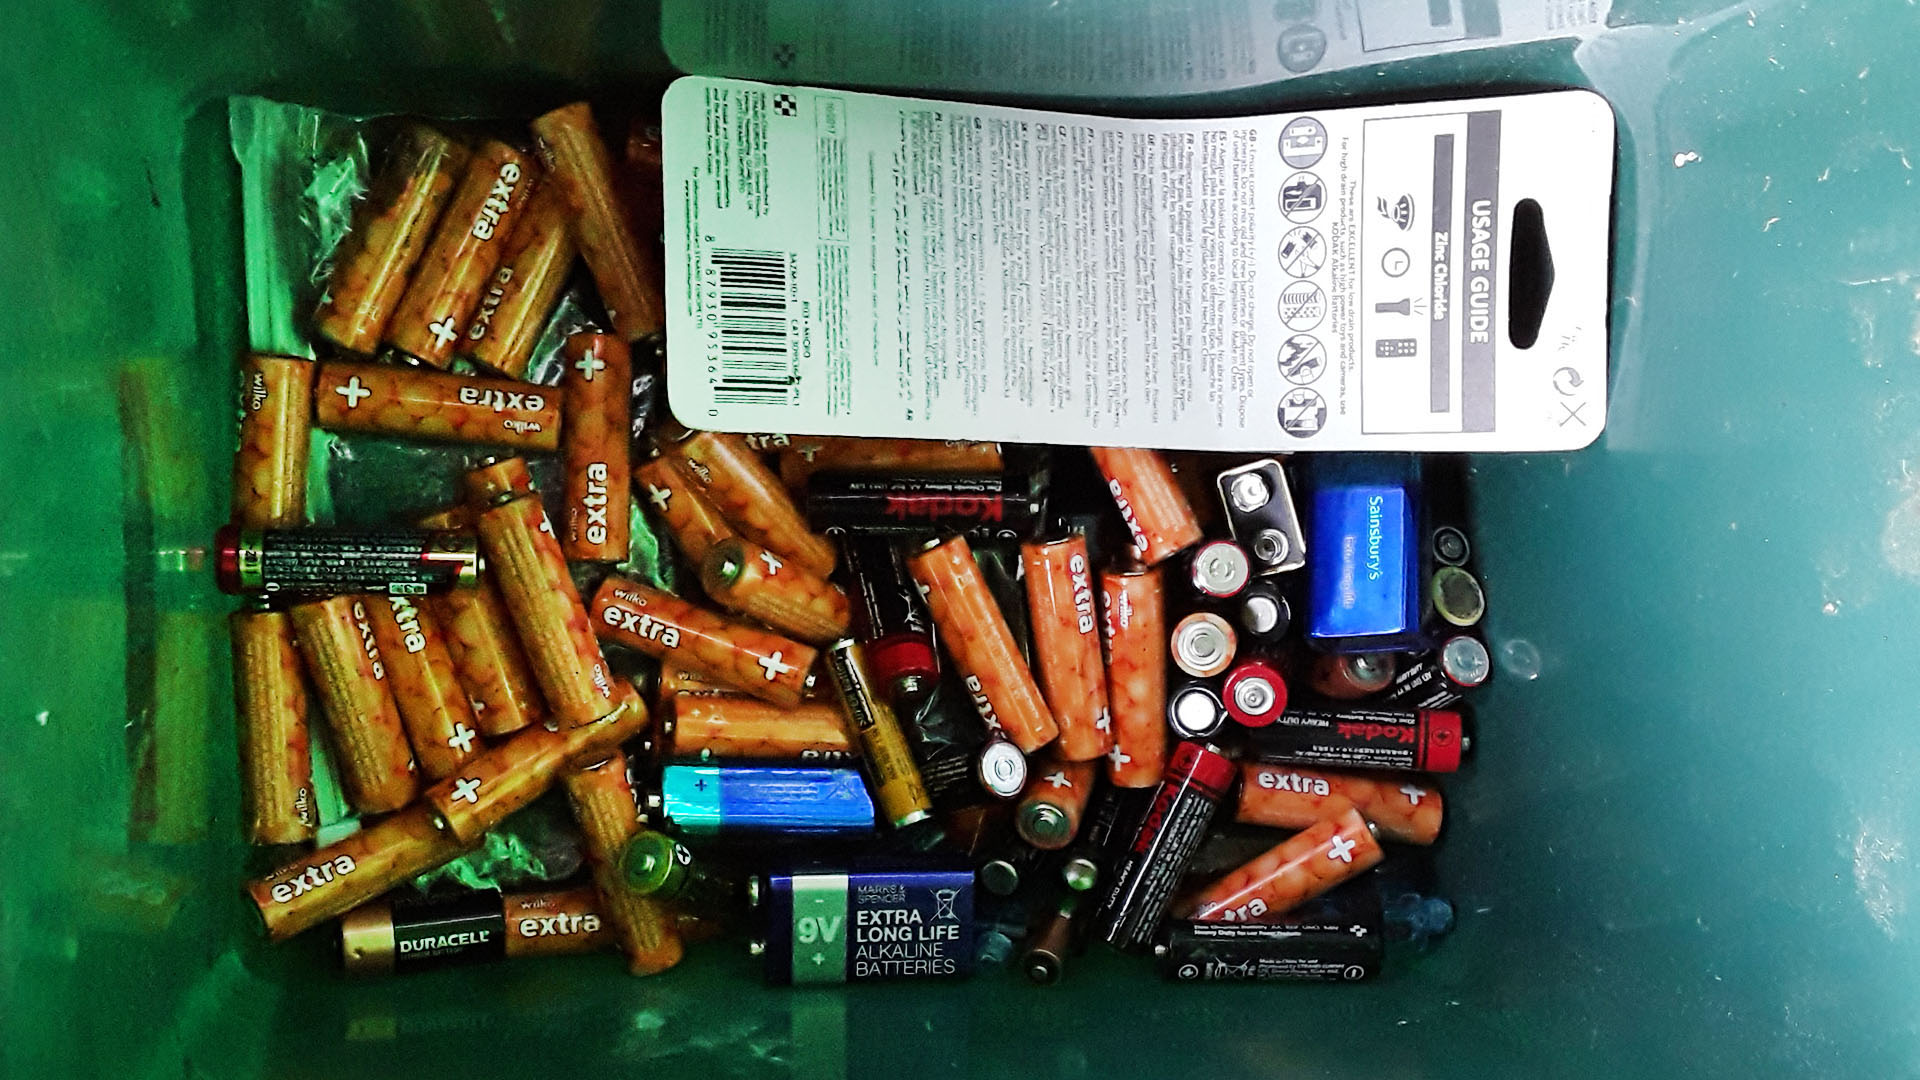 Batteries found in waste